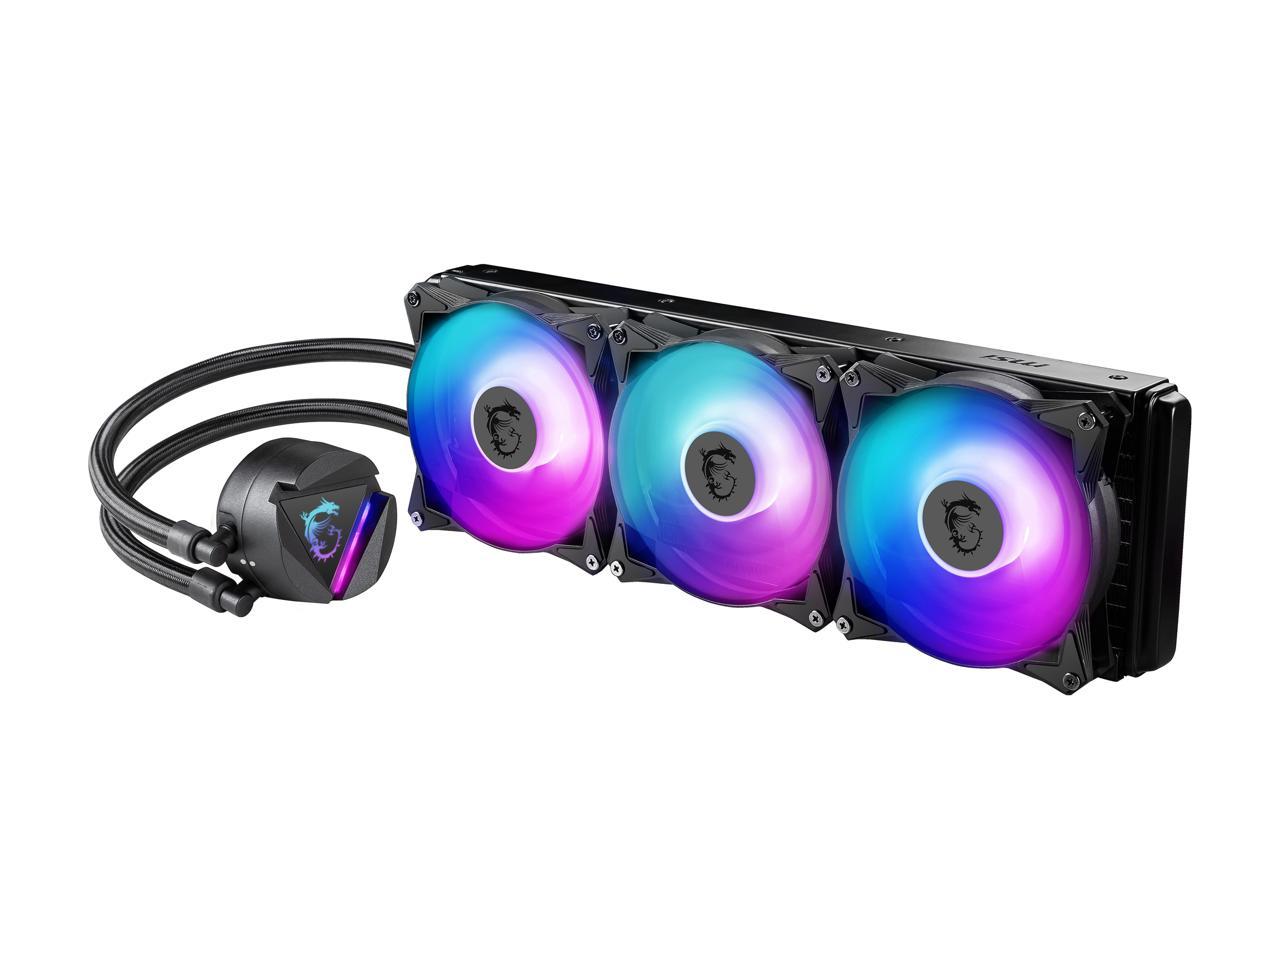 MSI MAG CORELIQUID 360R - AIO RGB Liquid Cooler @Newegg $100